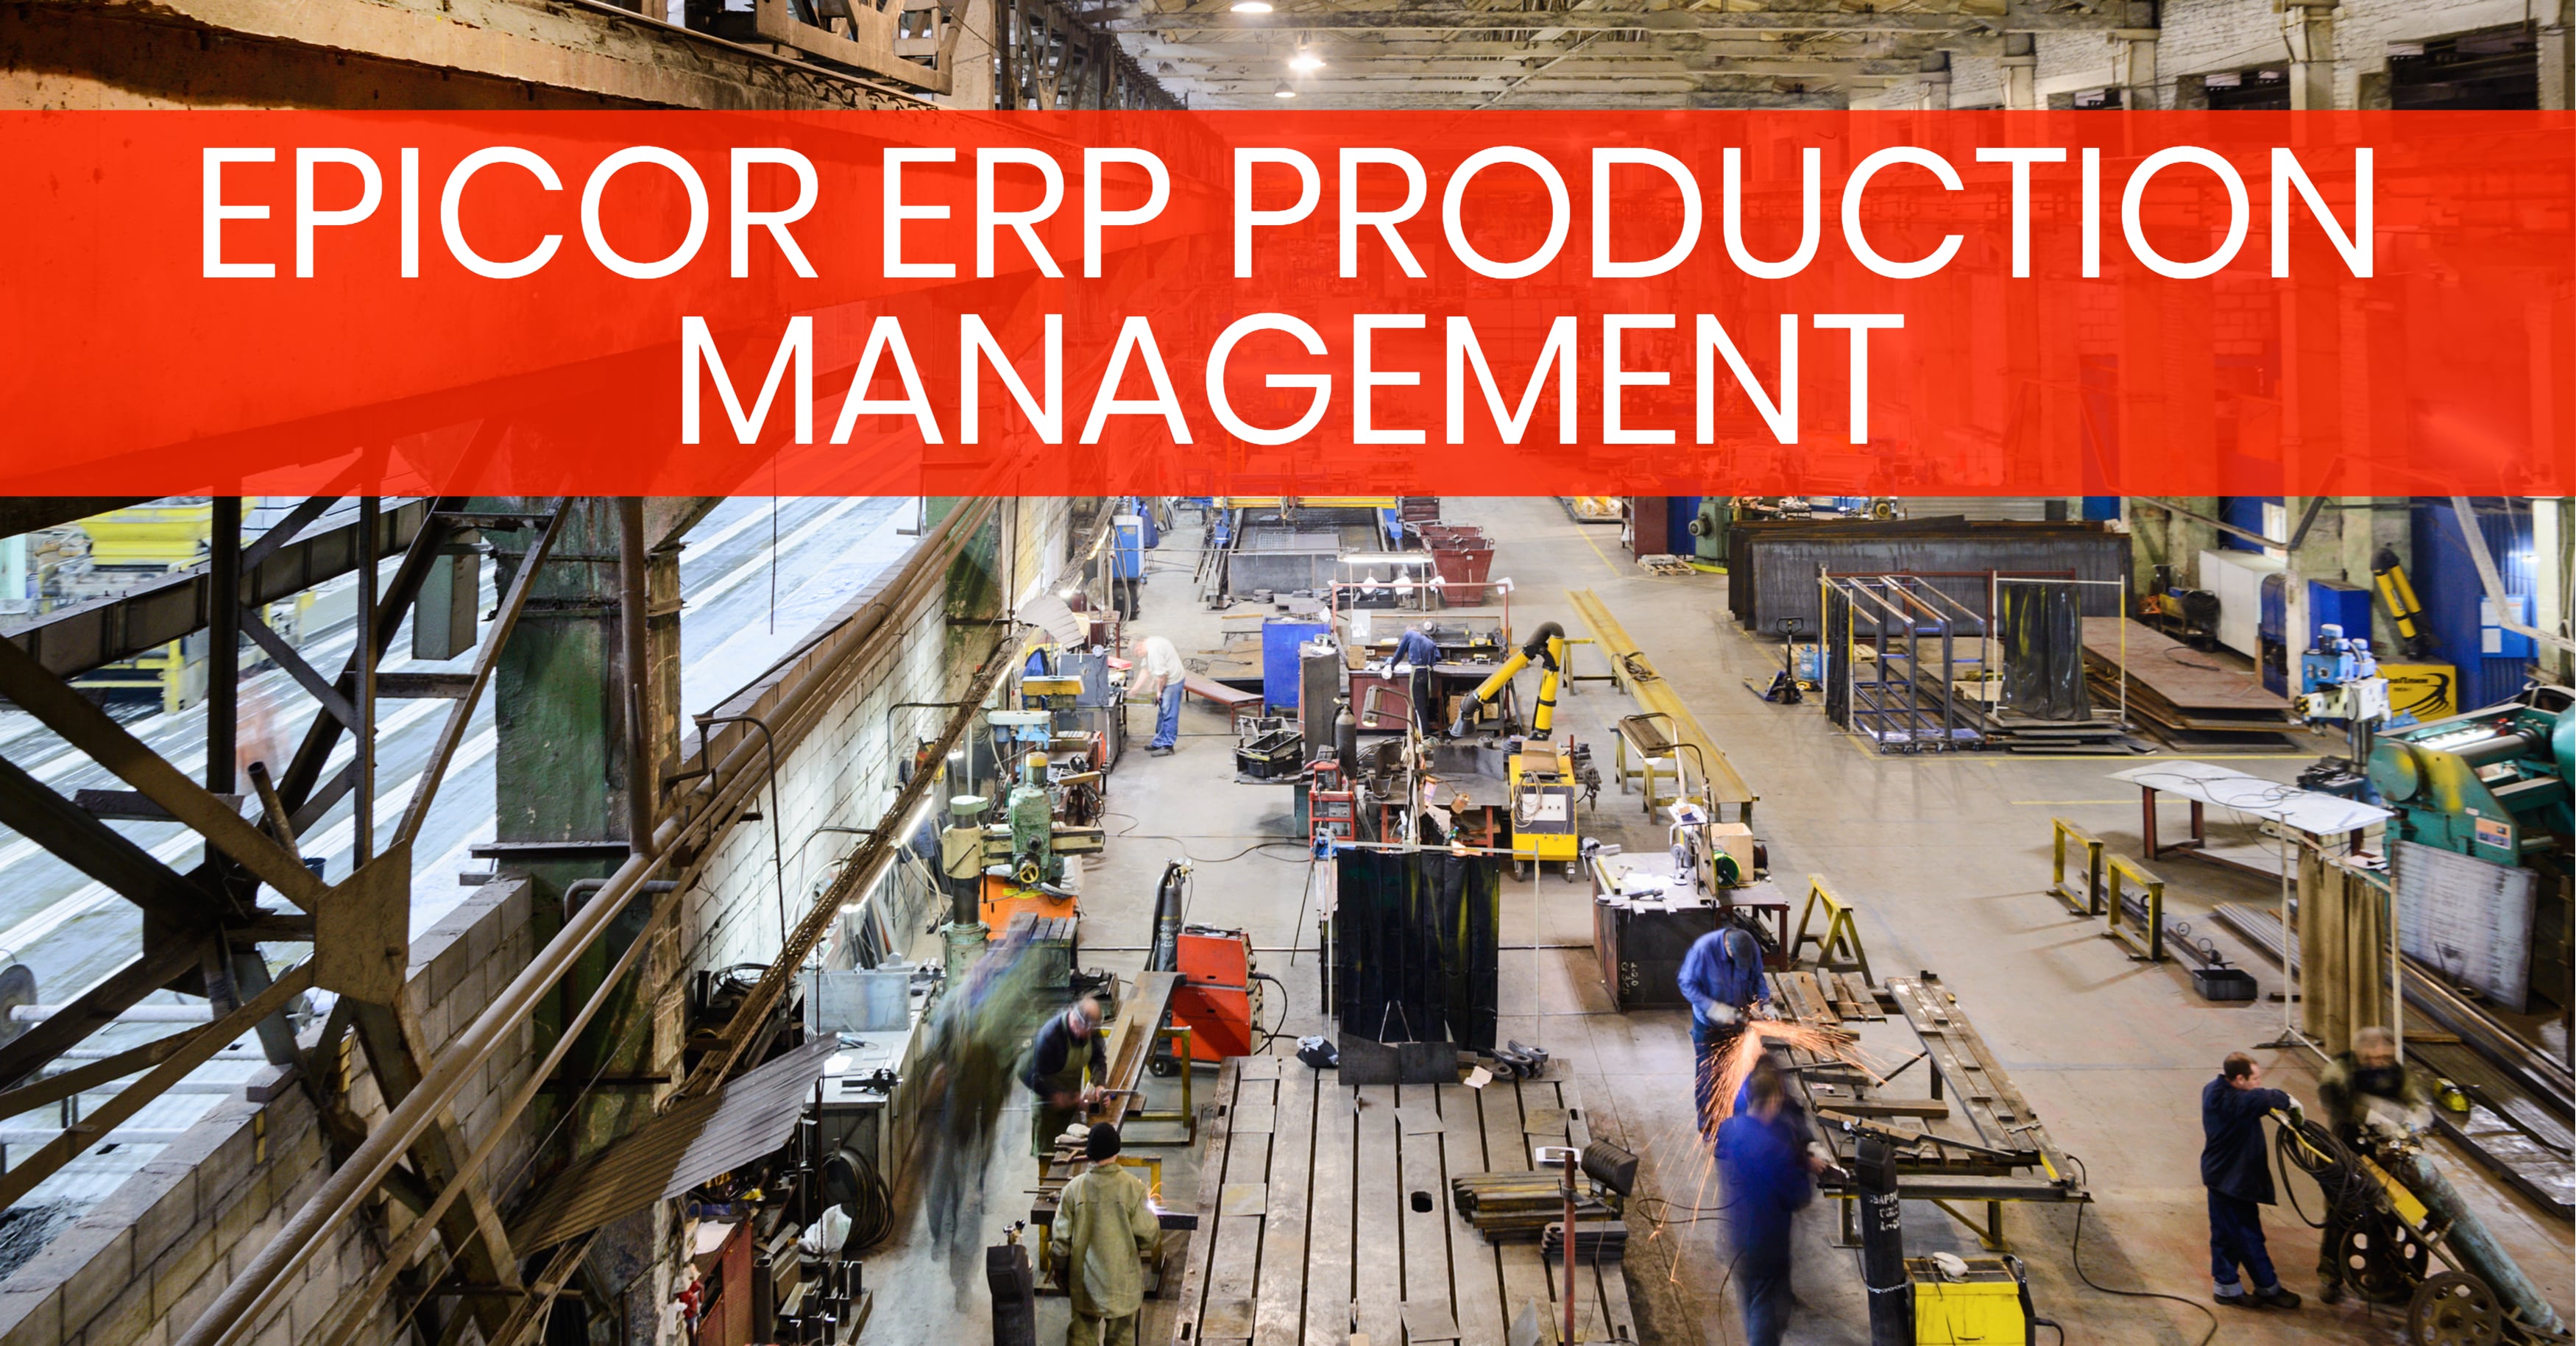 Epicor ERP Production Management